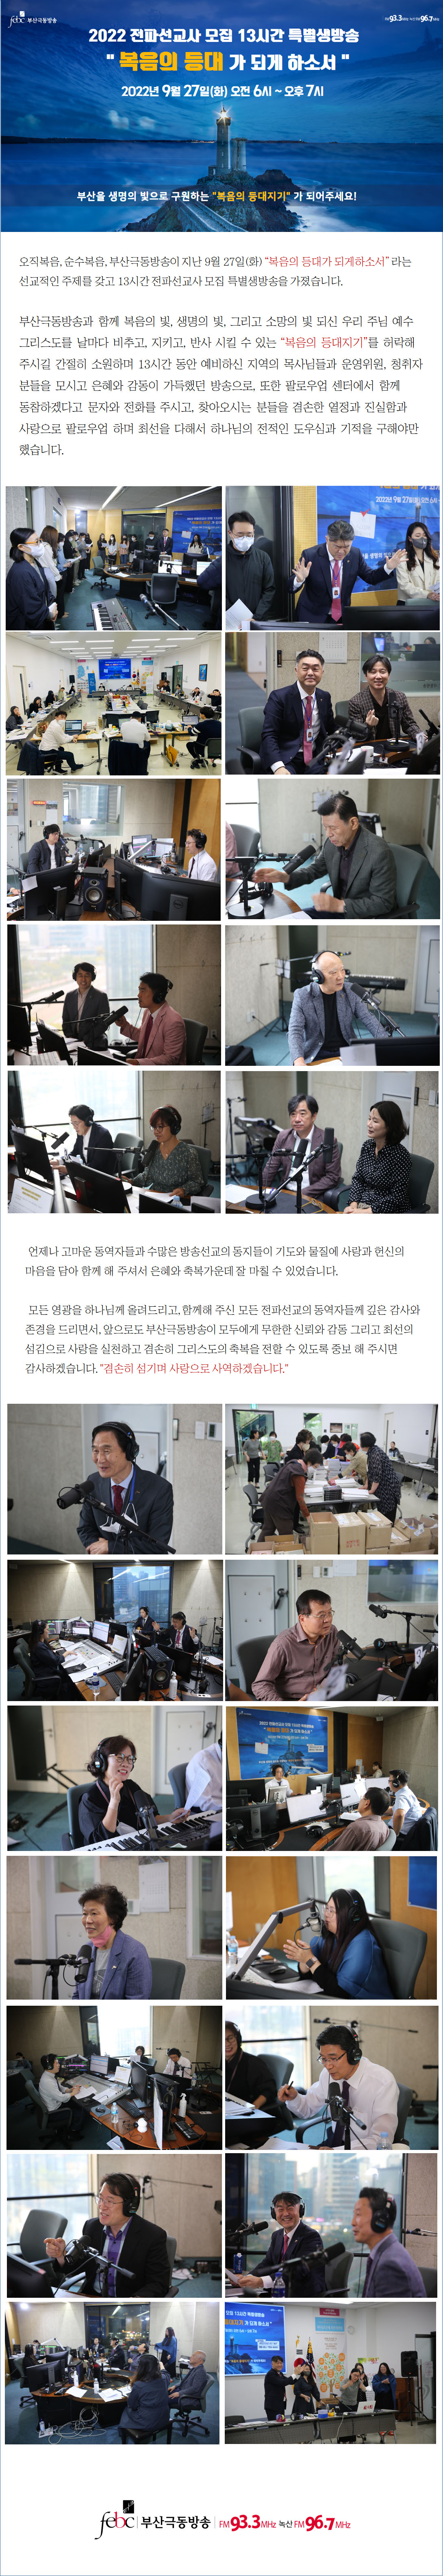 2022 전파선교사 모집 특별생방송 게시판(최종).jpg